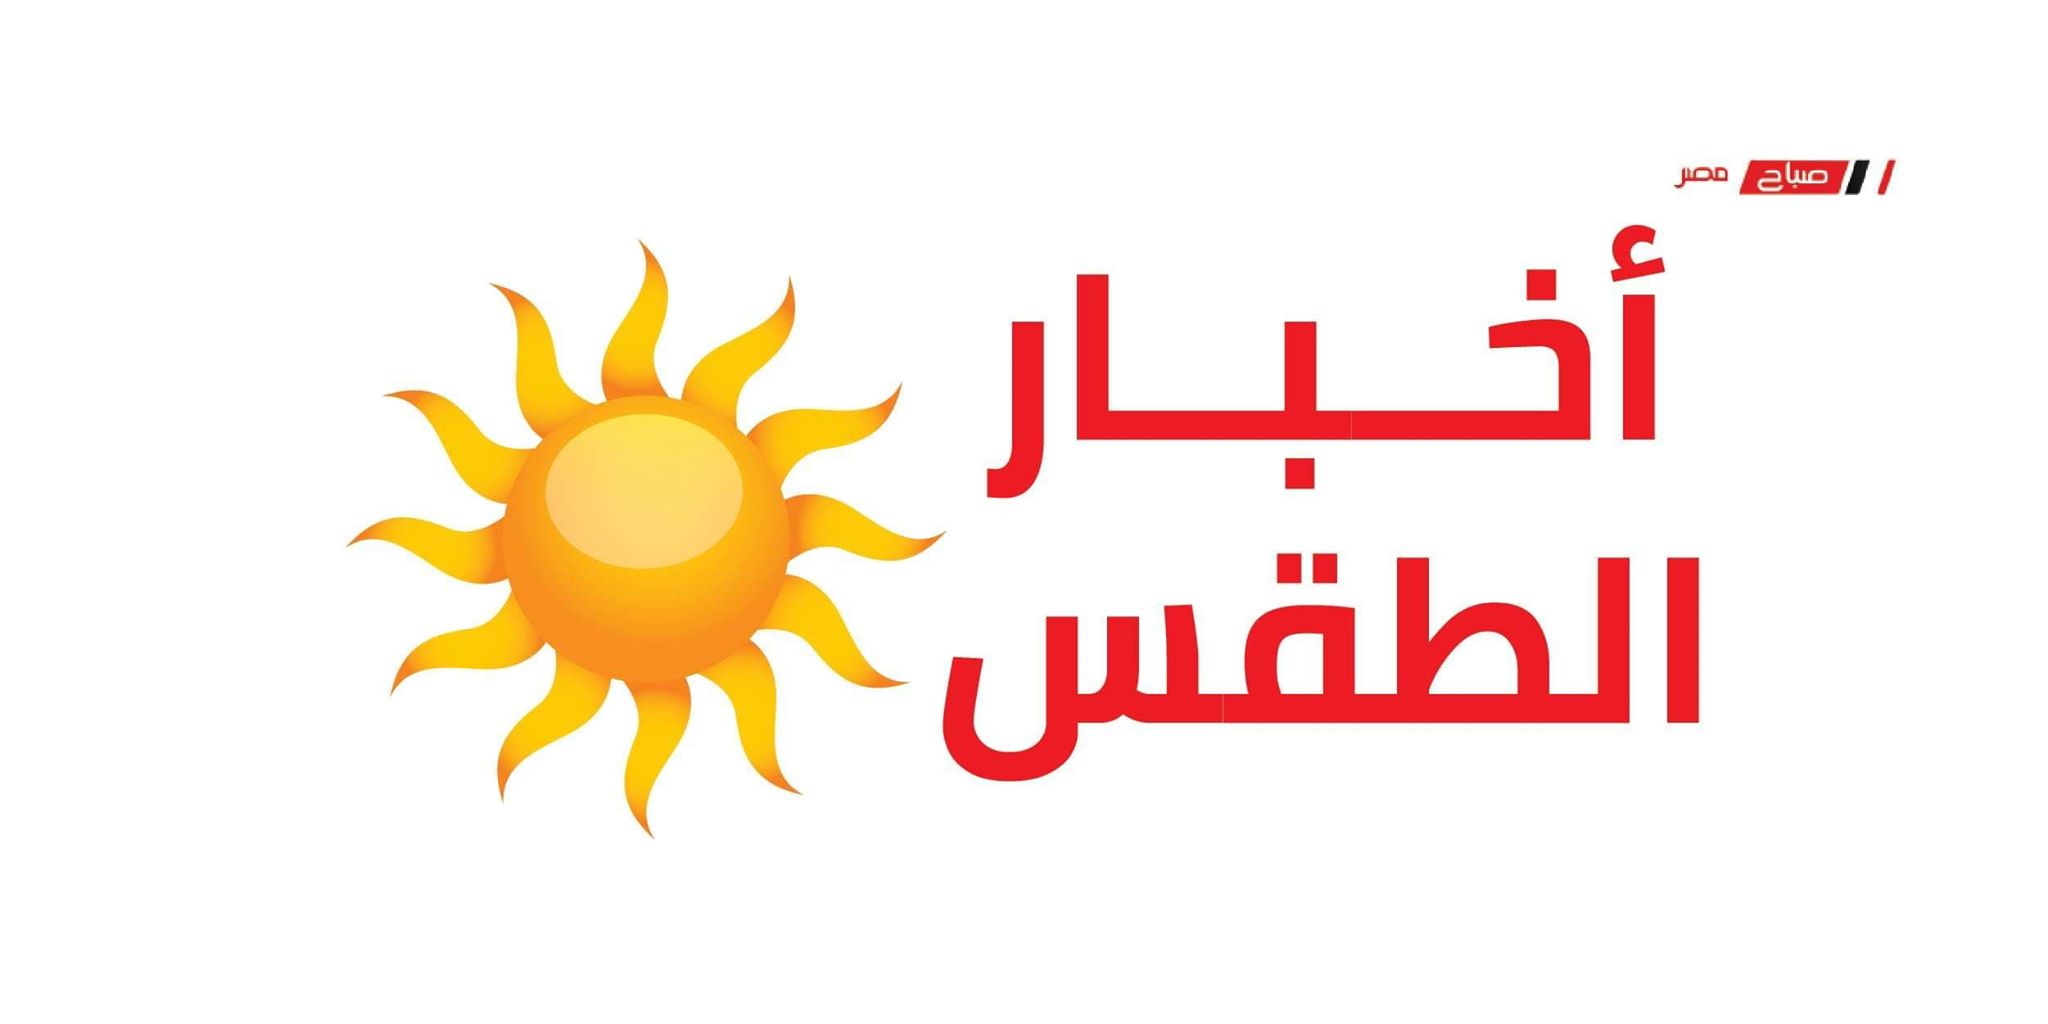 إرتفاع جديد في درجات الحرارة في القاهرة تعرف على حالة طقس اليوم الخميس 14_5_2020